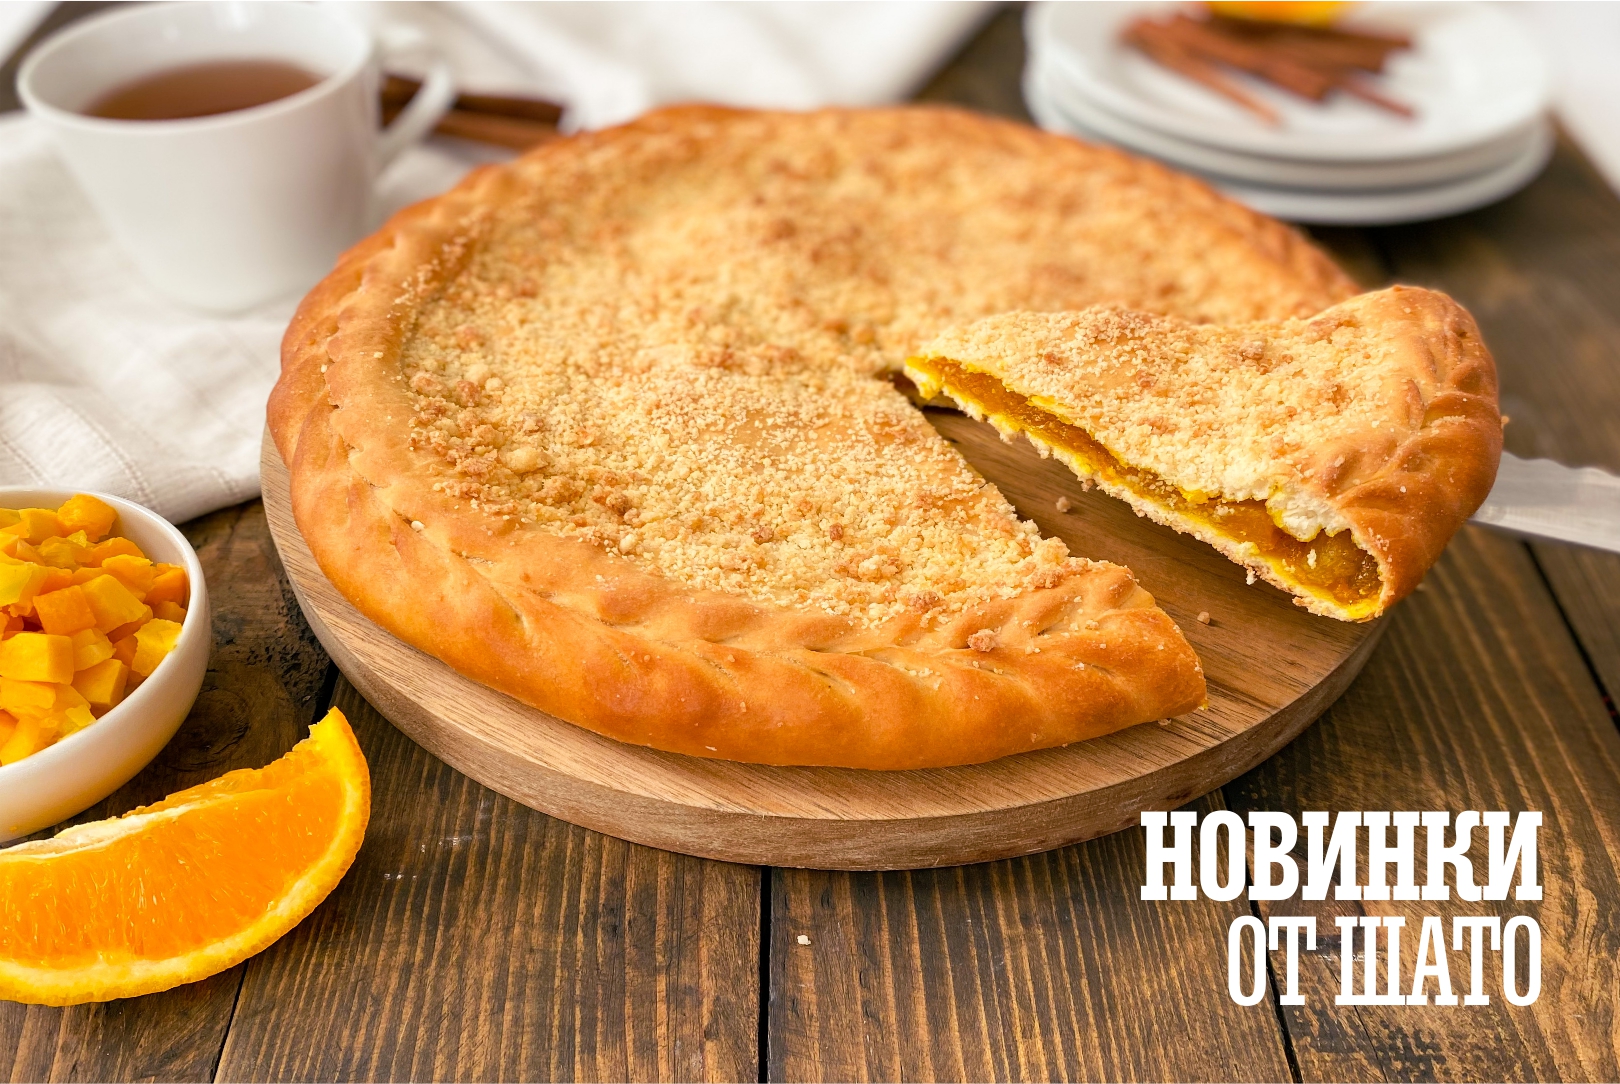 Нежный, теплый и сладкий пирог с тыквой и цедрой апельсина уже доступен к заказу на сайте!